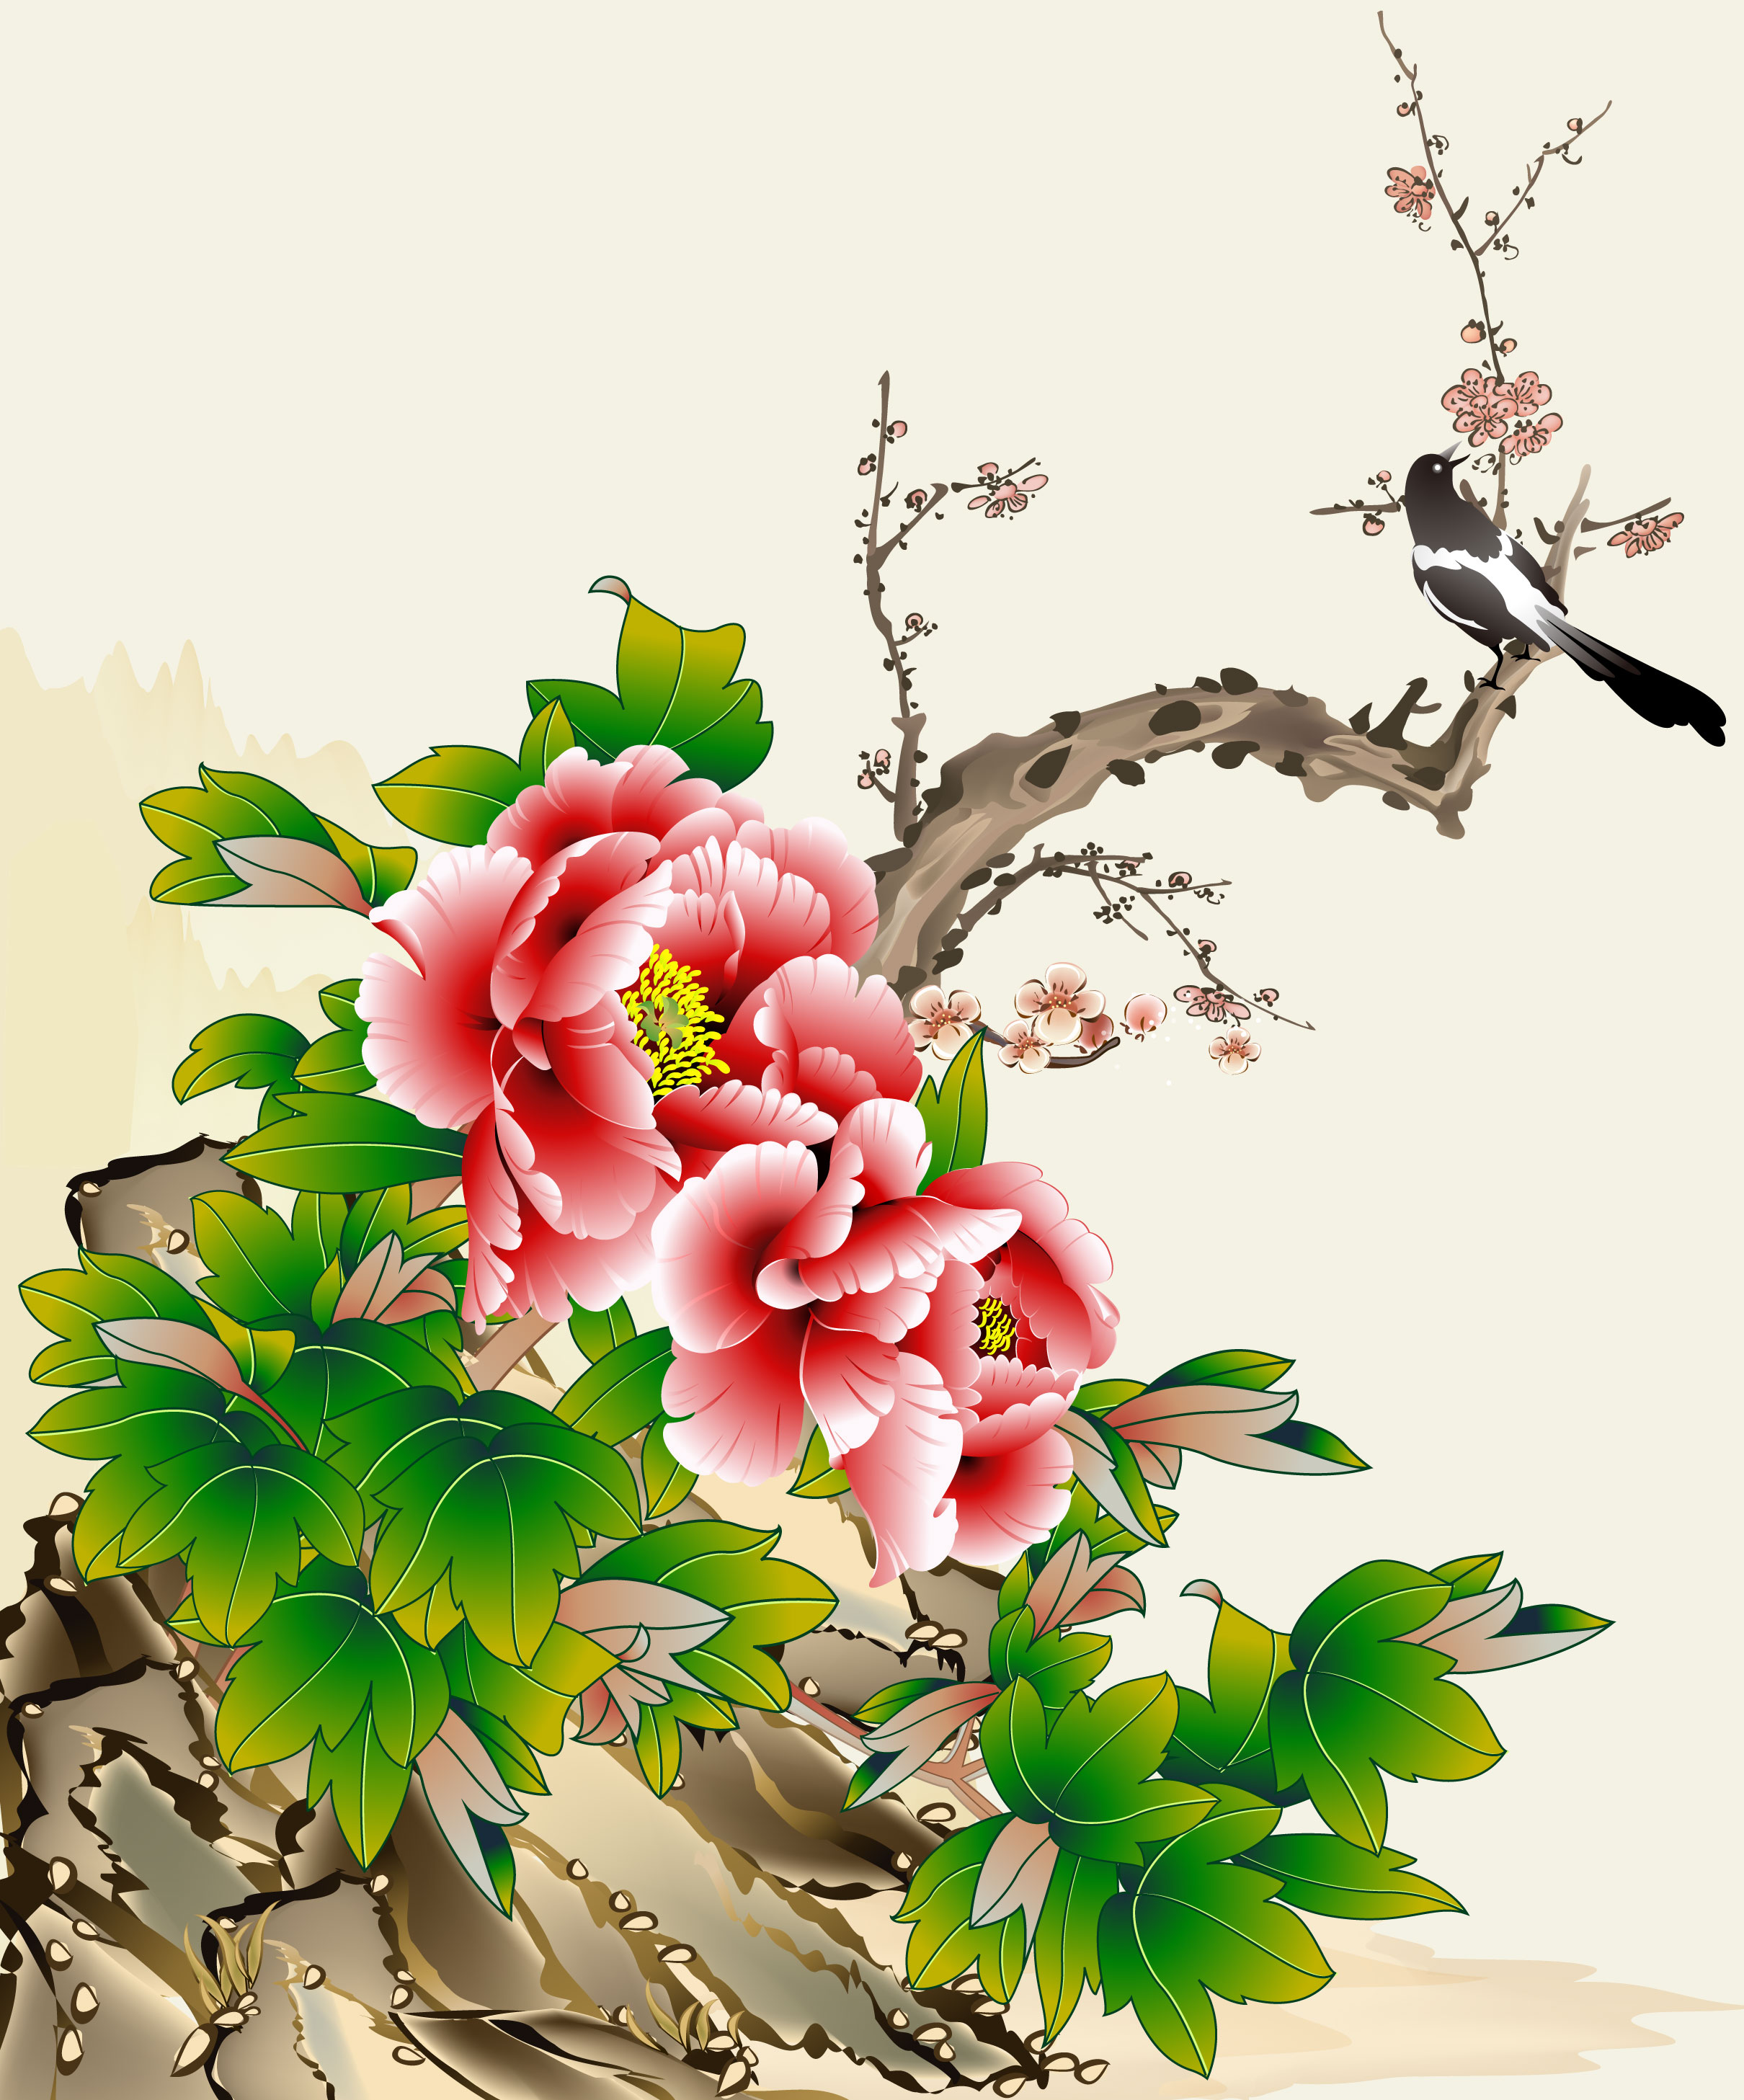 赤い花のイラスト フリー素材 背景 壁紙no 1024 ピンク 太枝 和風の花イラスト画像 年賀状 Naver まとめ